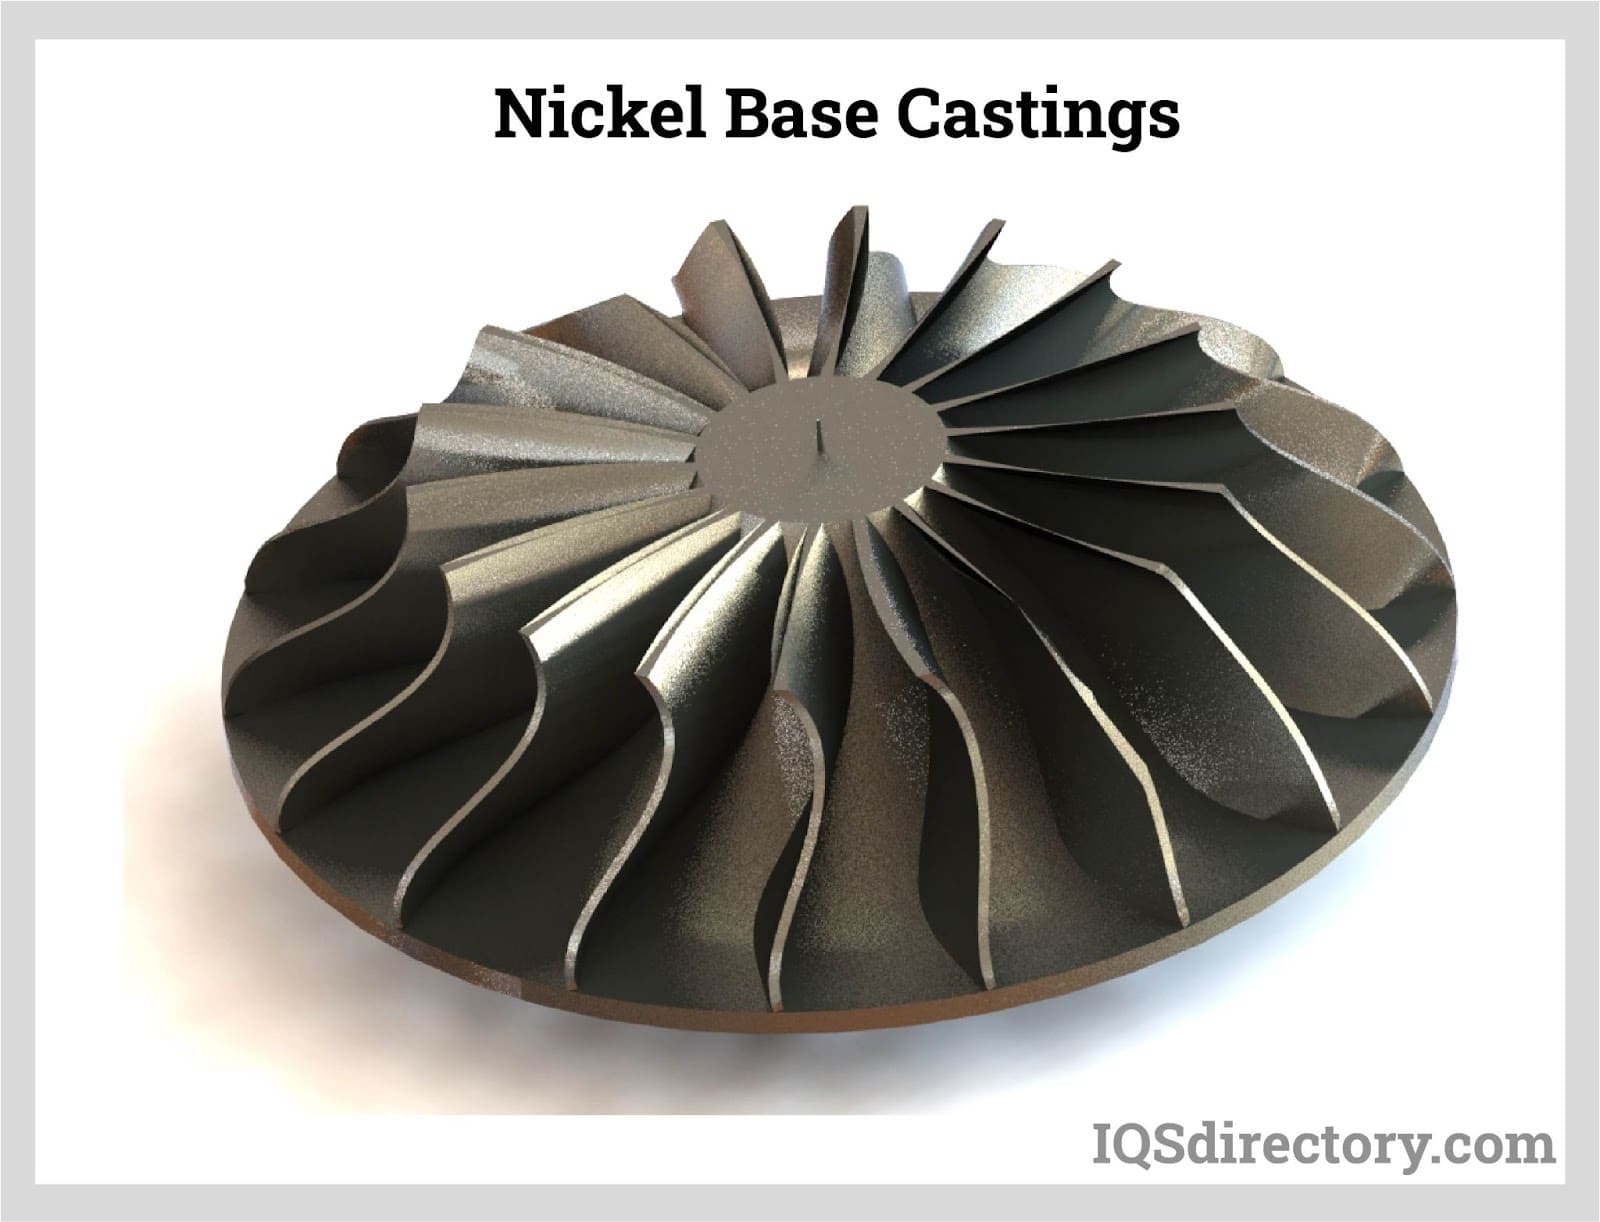 Nickel Base Castings